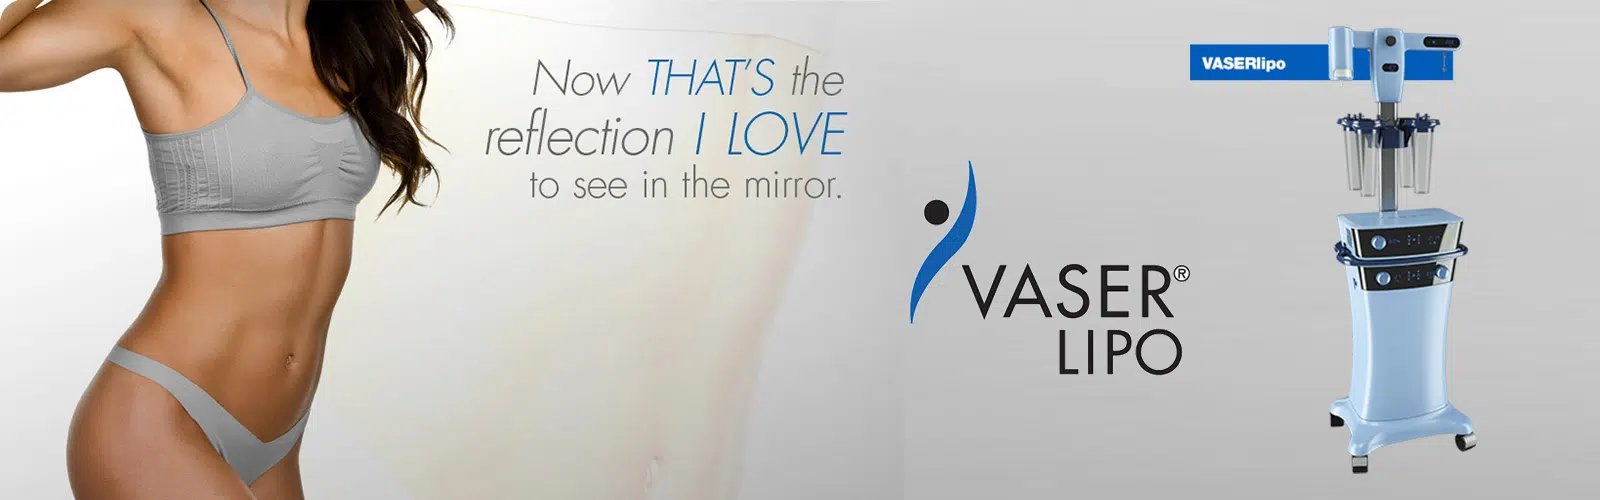 vaser promotional banner